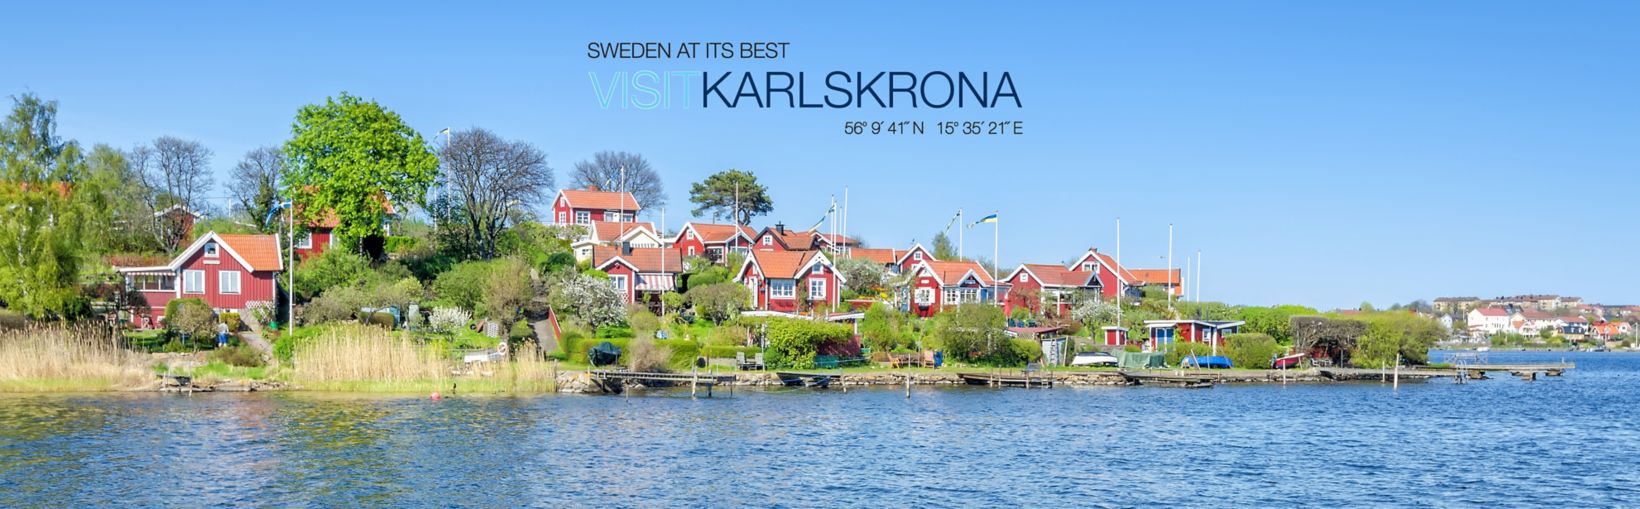 Panorama de edificios tradicionales con paredes rojas y techos en la costa de Karlskrona en la península de Brandaholm